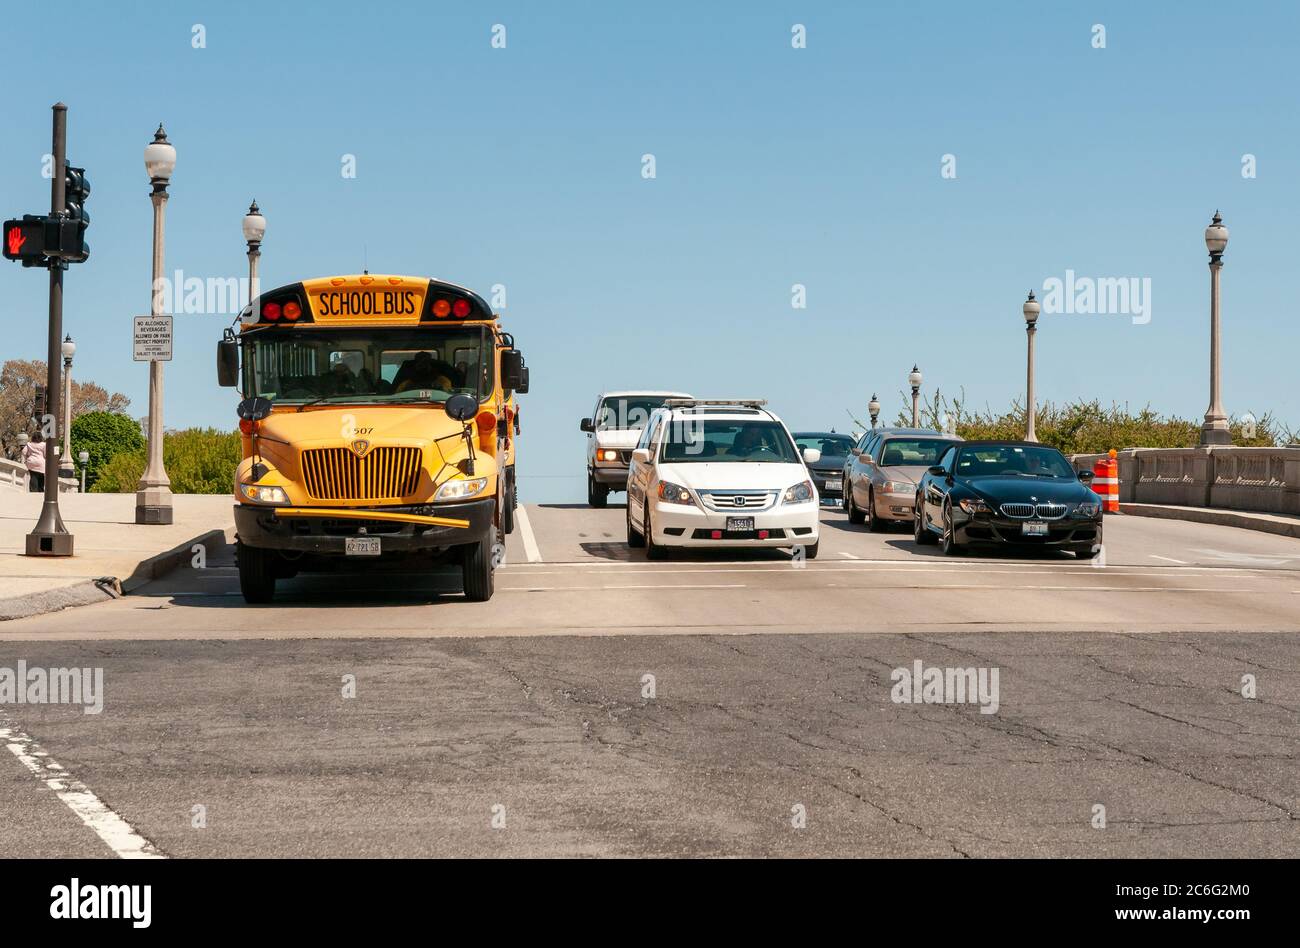 Chicago, Illinois, USA - 23 aprile 2012: Autobus e auto giallo si fermavano al semaforo rosso sulla strada nel centro di Chicago, Illinois, USA Foto Stock